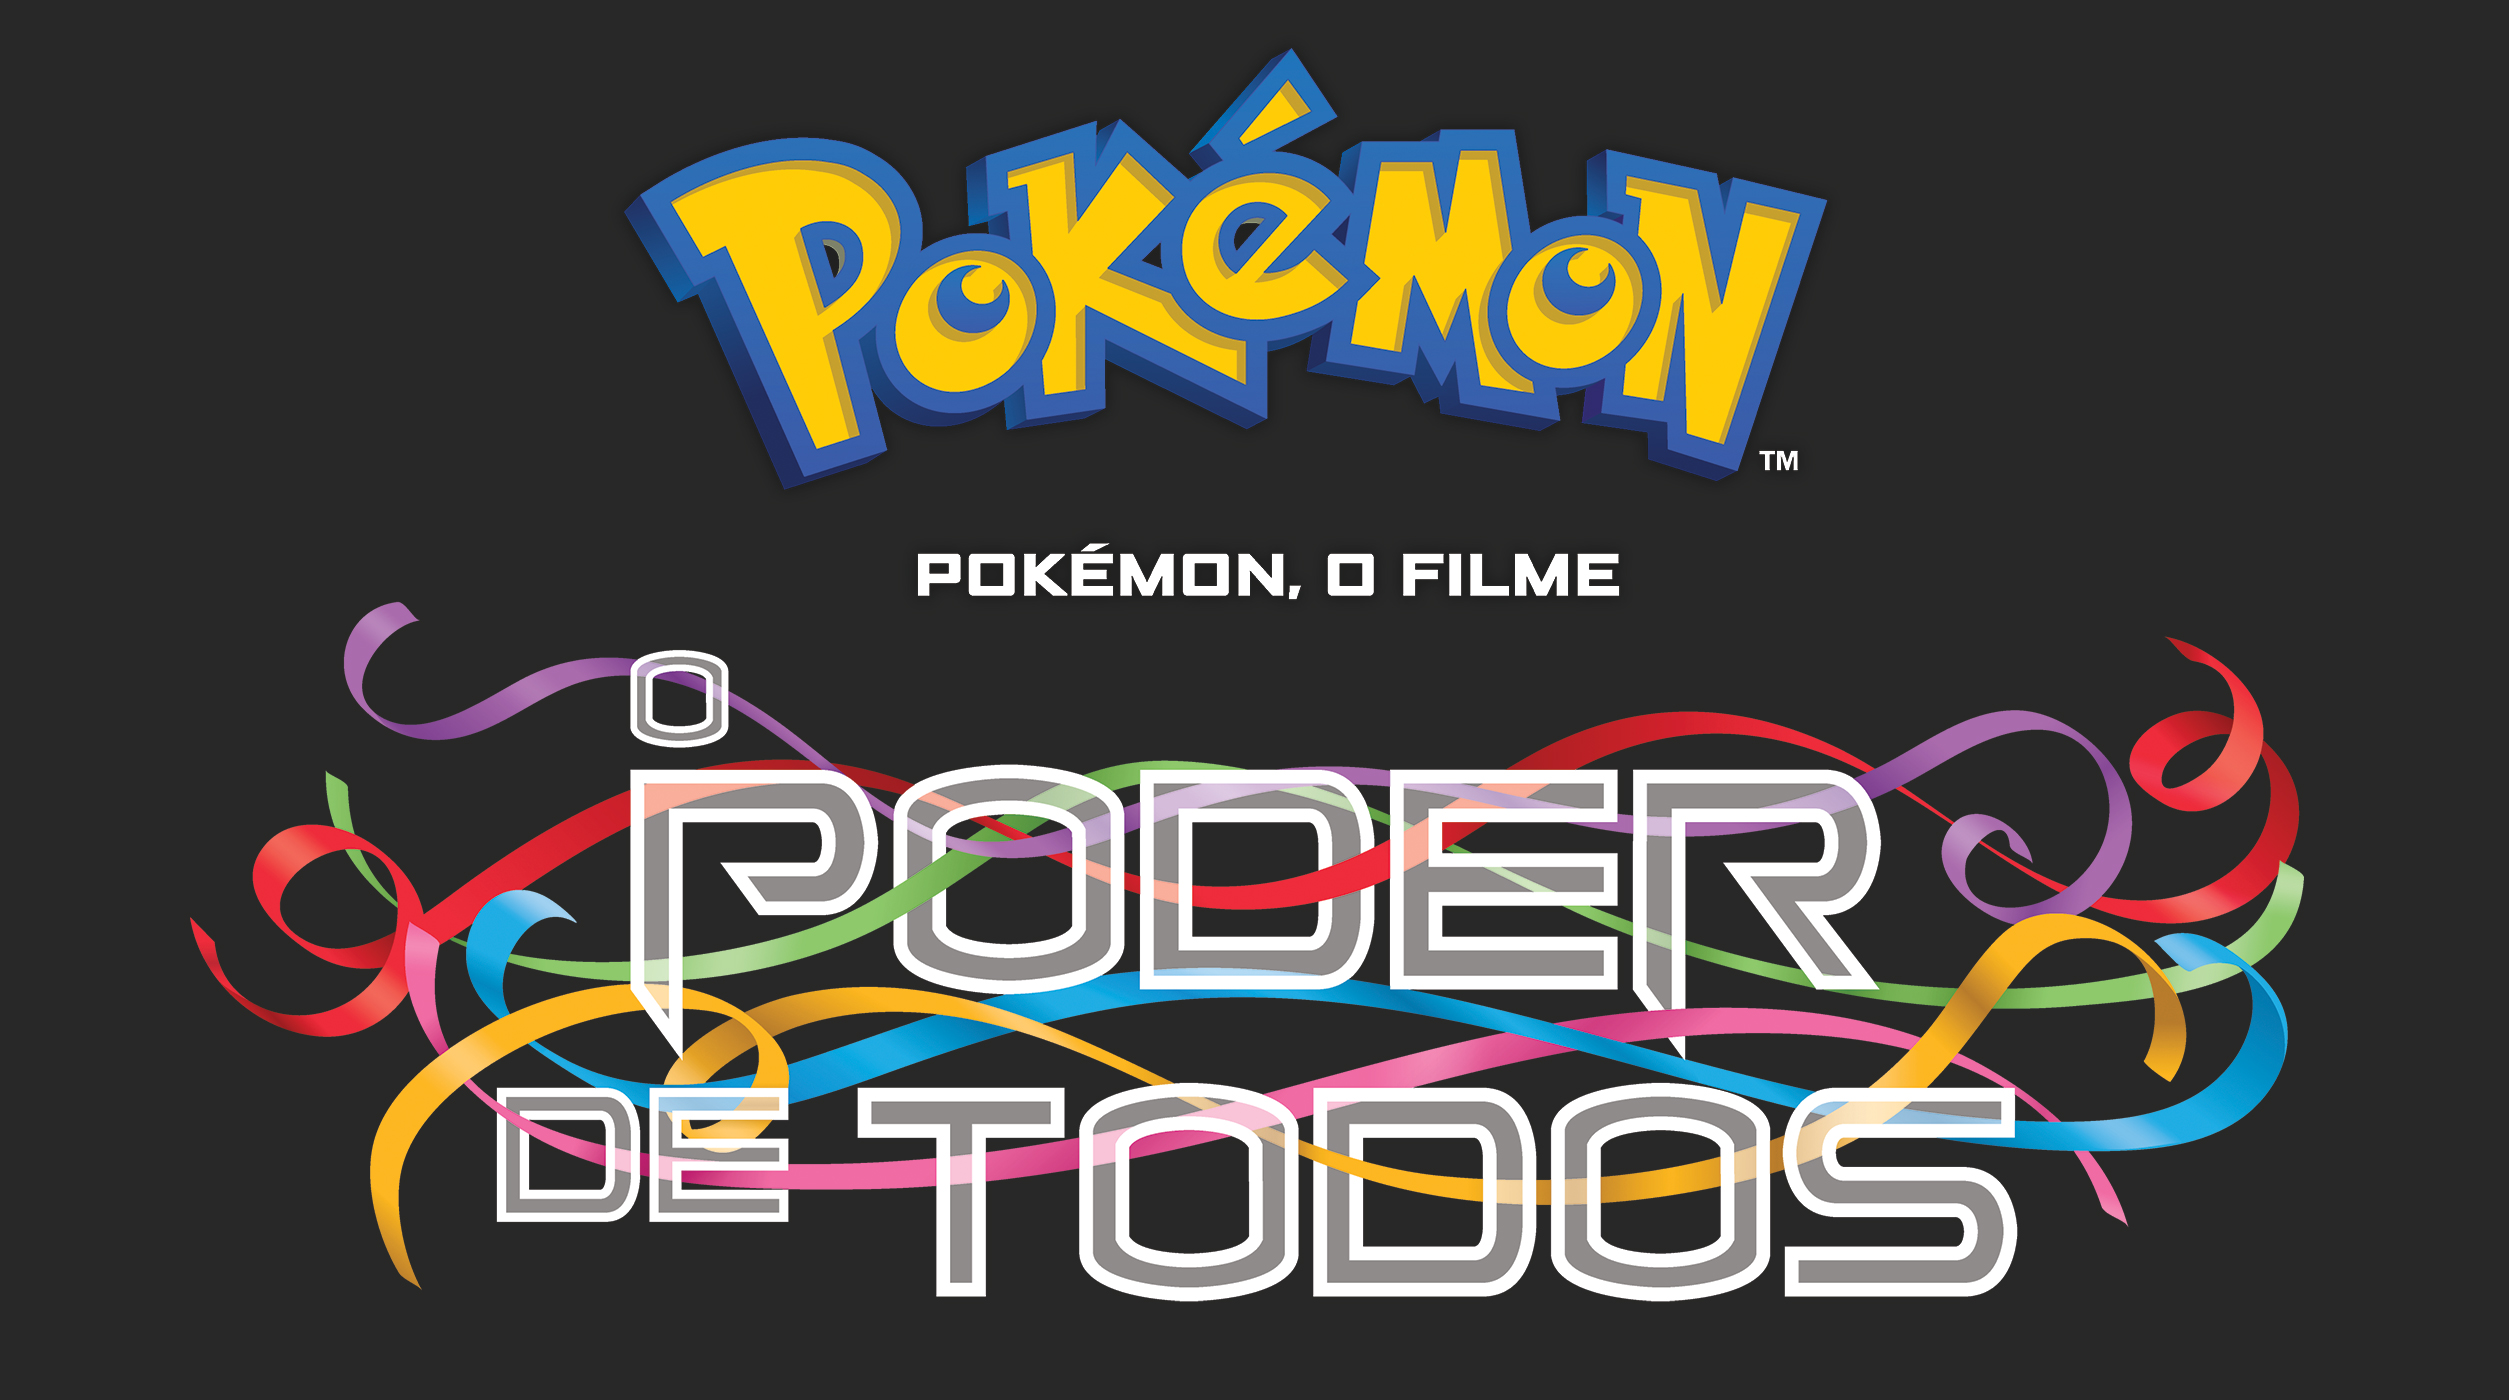 Assistir Pokémon – O Filme 21: O Poder de Todos Dublado Online